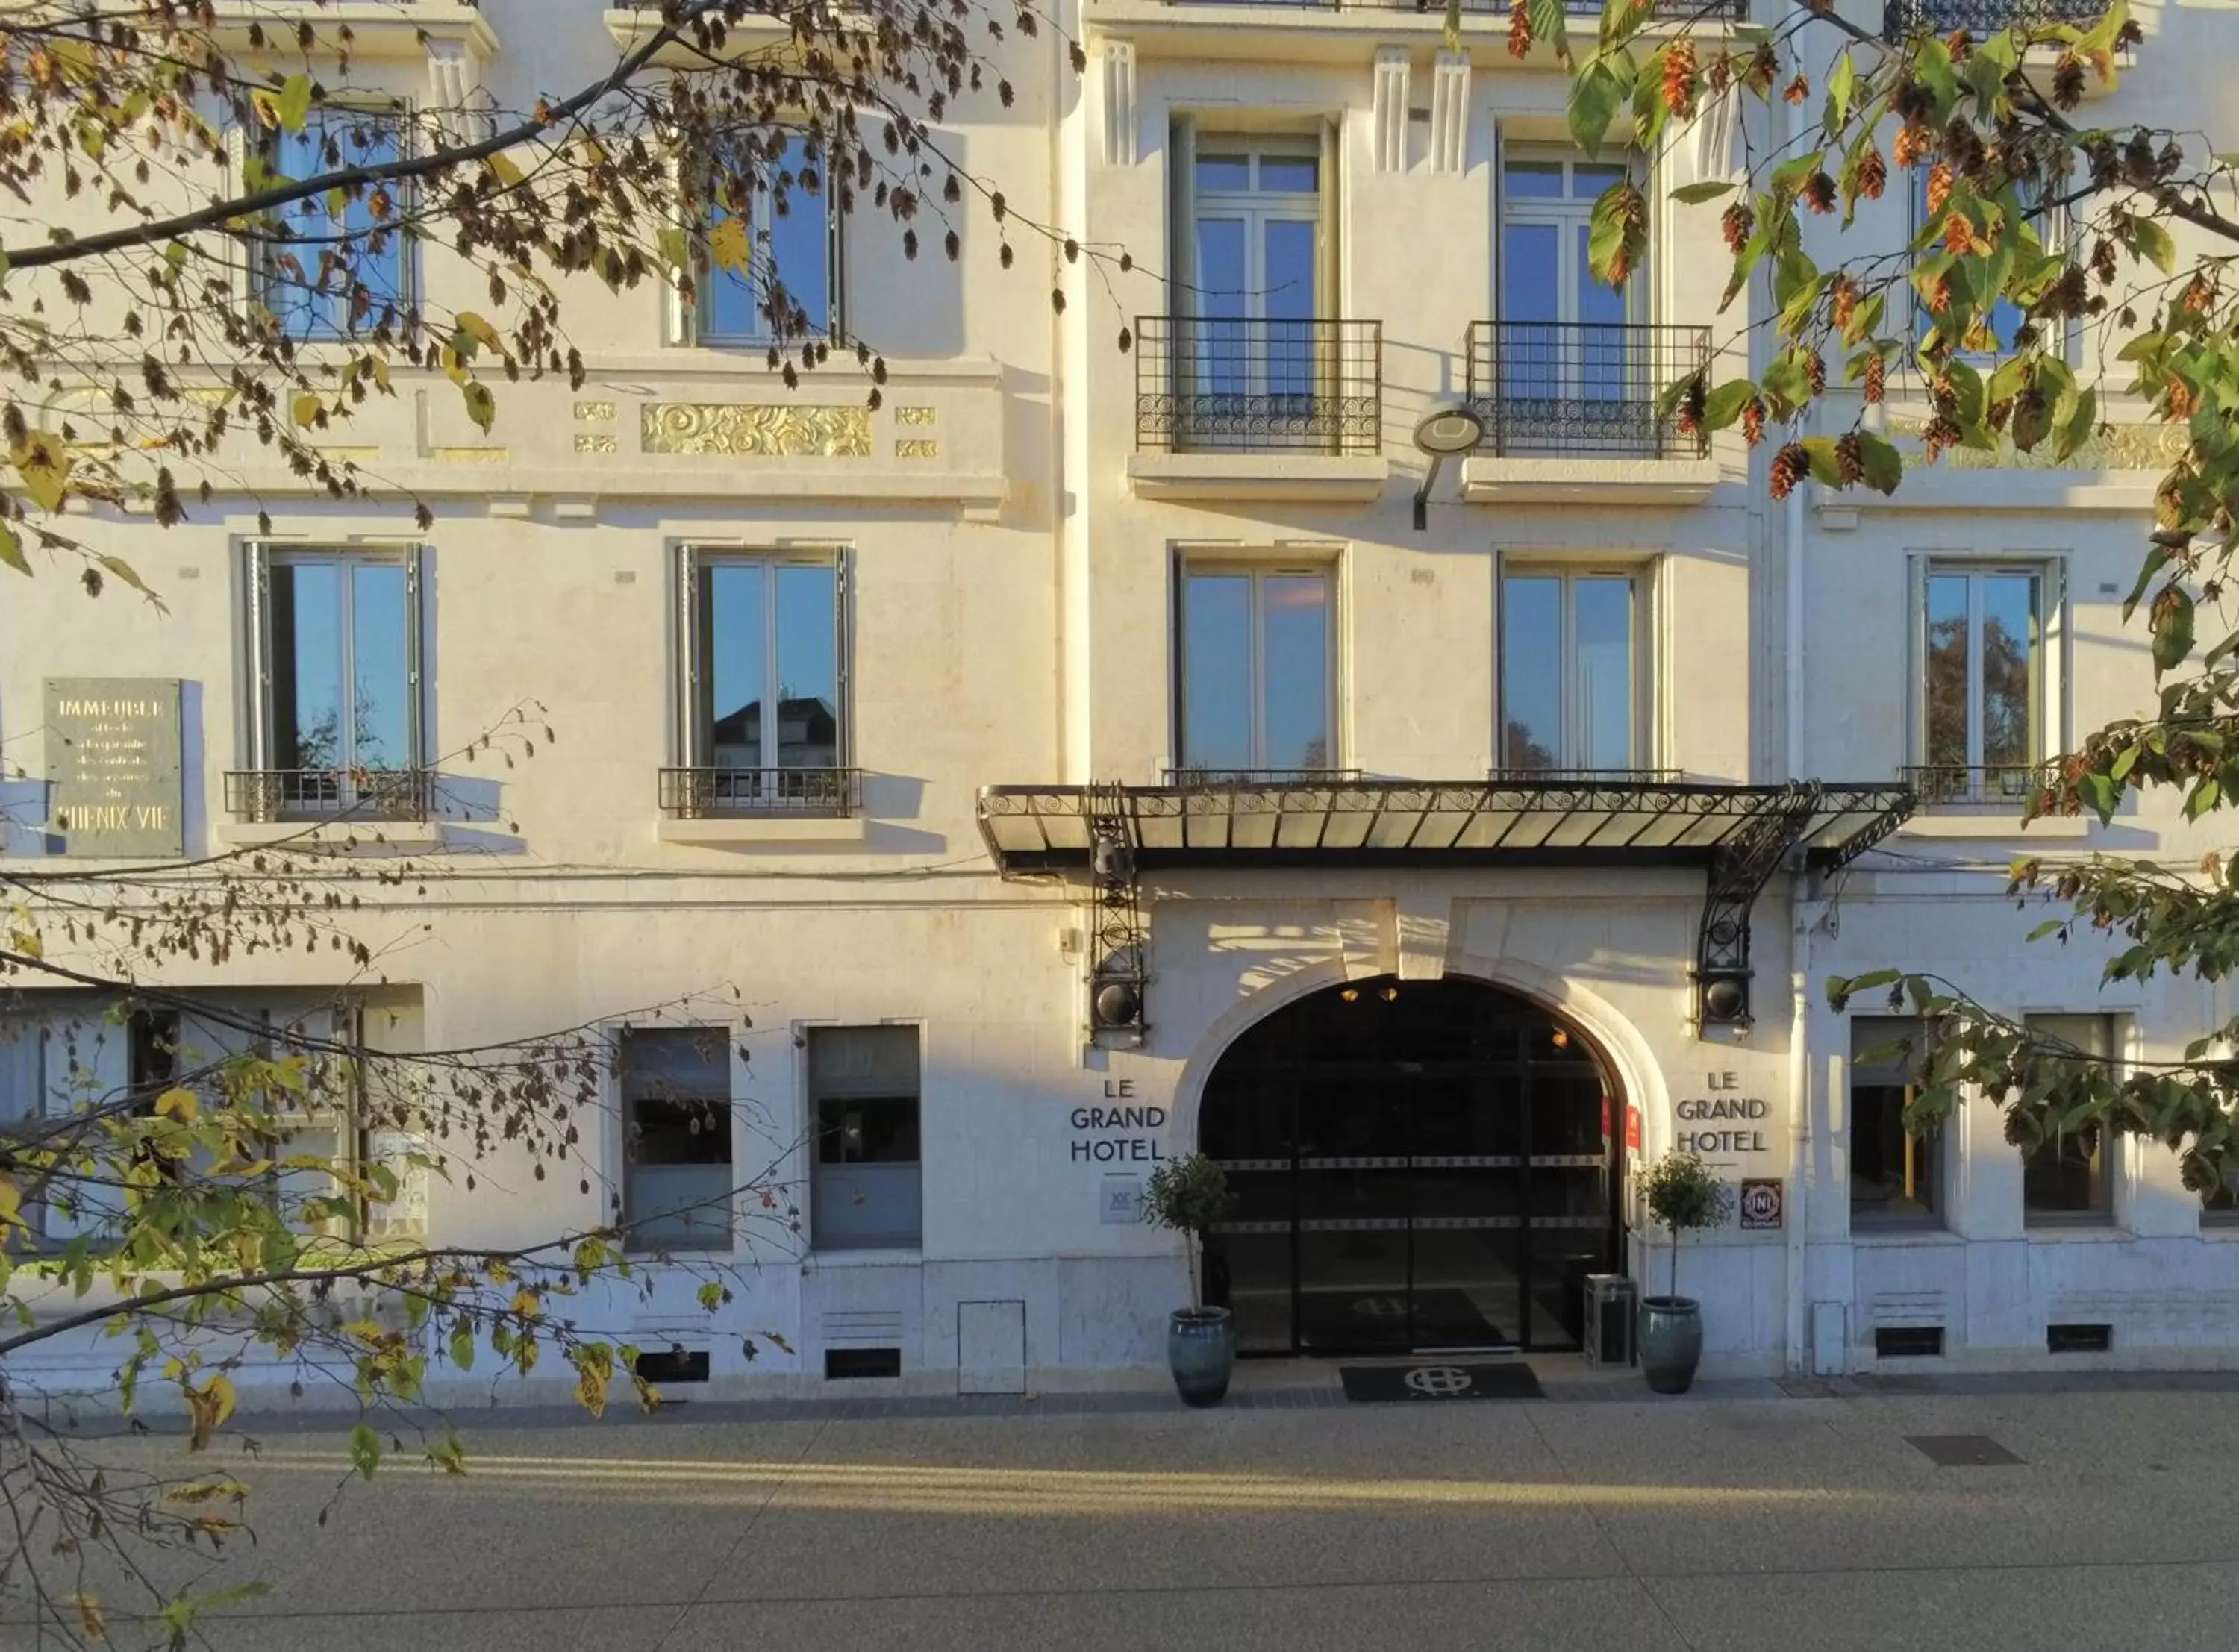 Facade/entrance in Le Grand Hotel